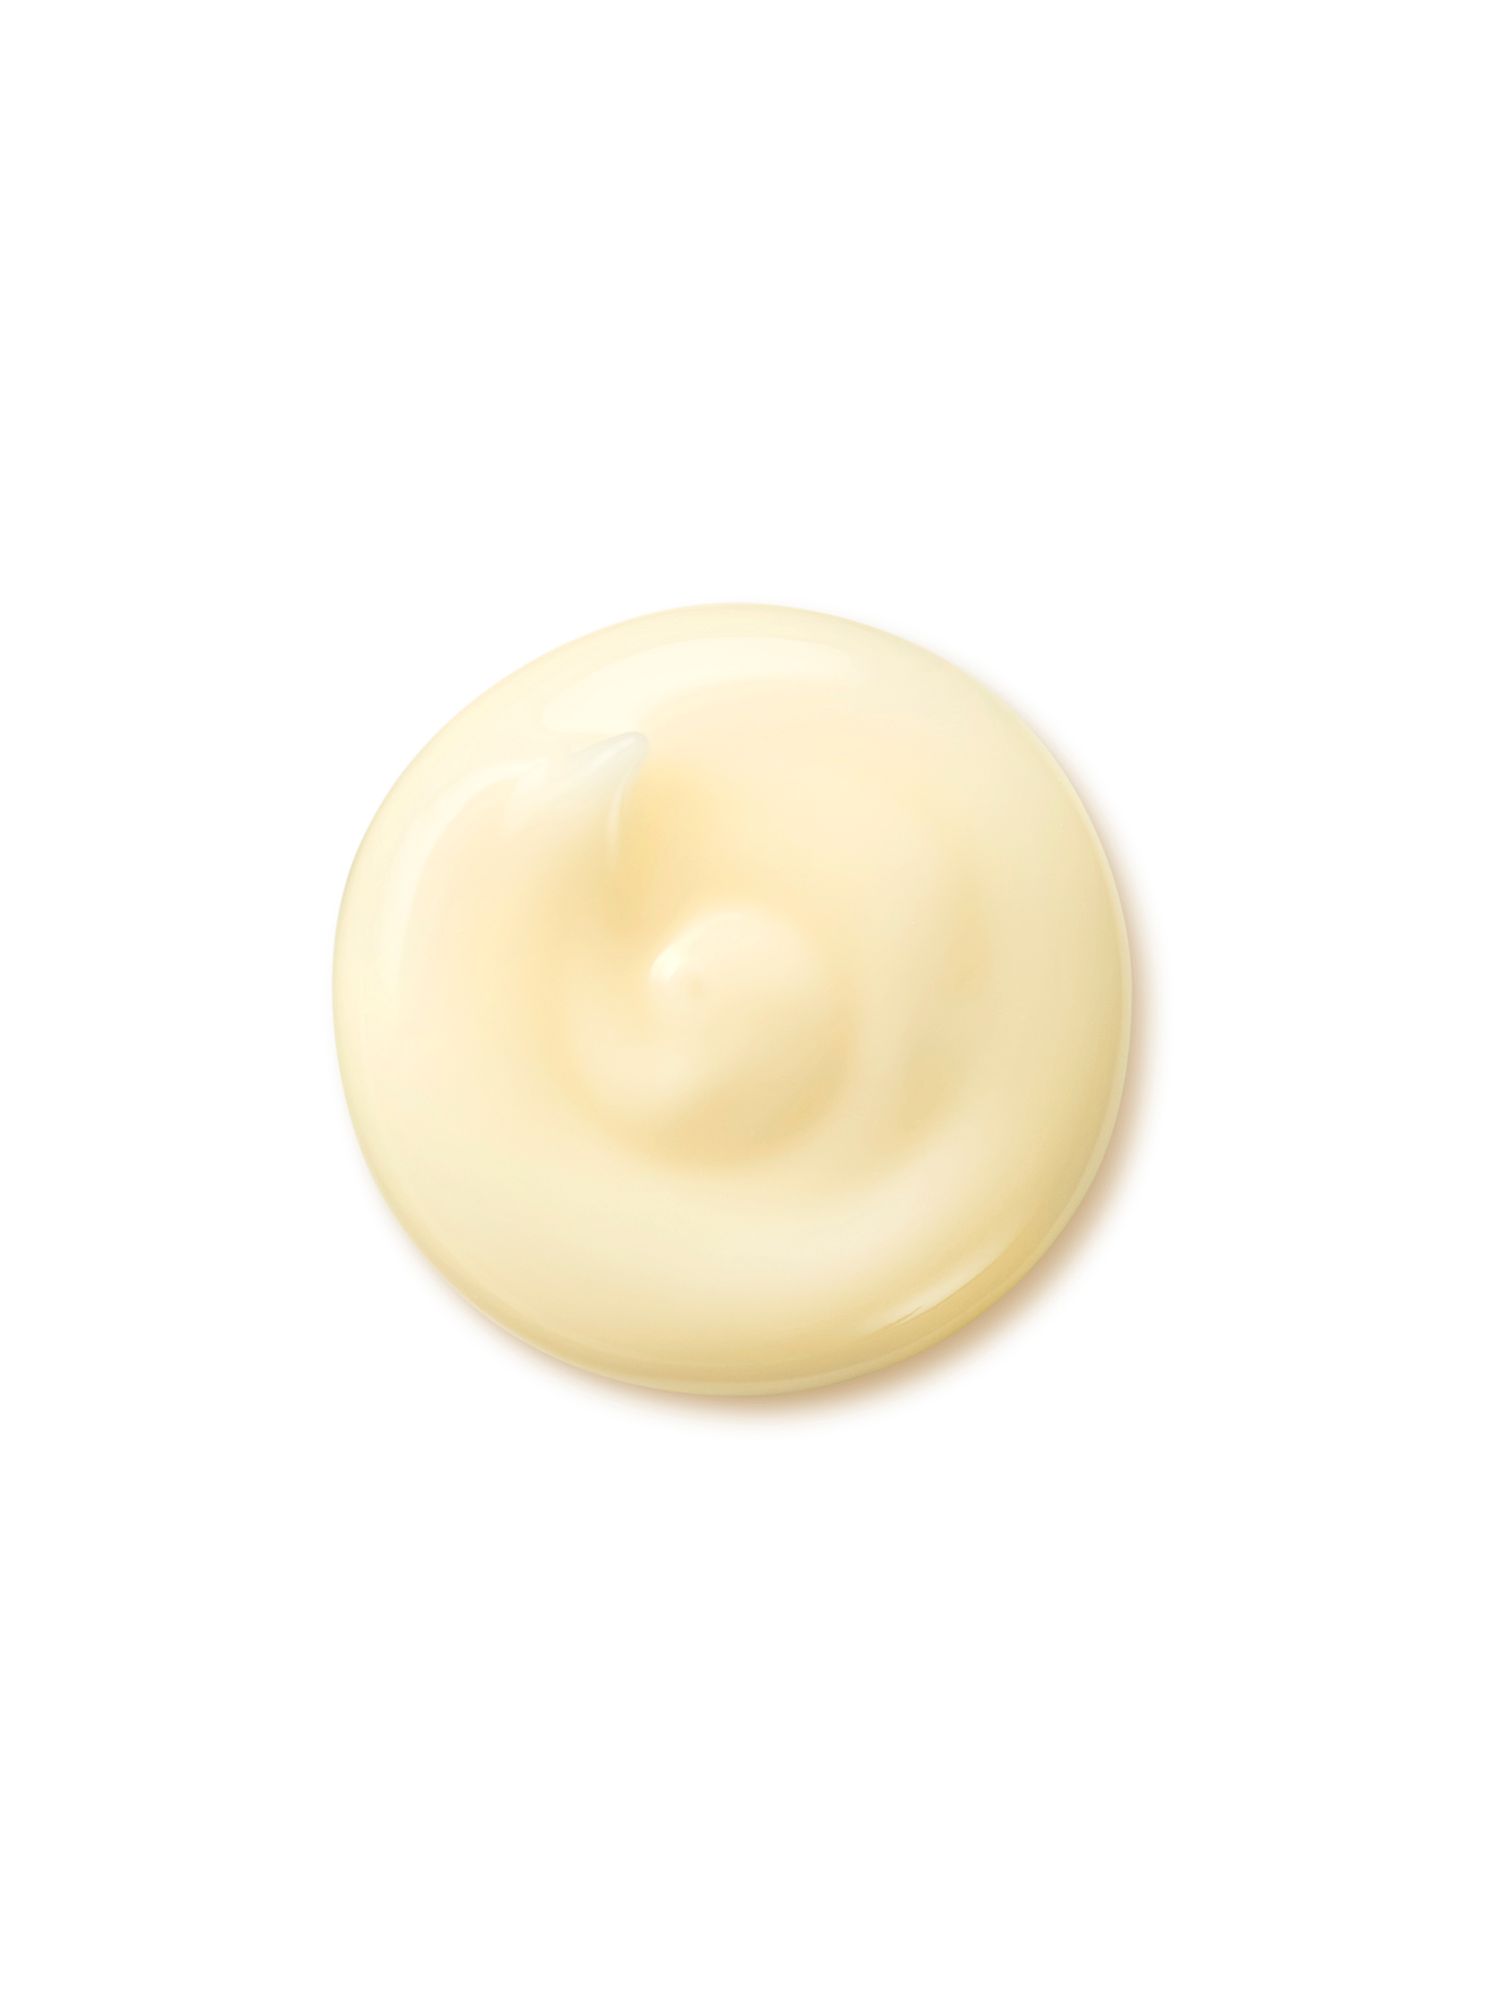 Shiseido Benefiance Wrinkle Smoothing Cream, 50ml 3